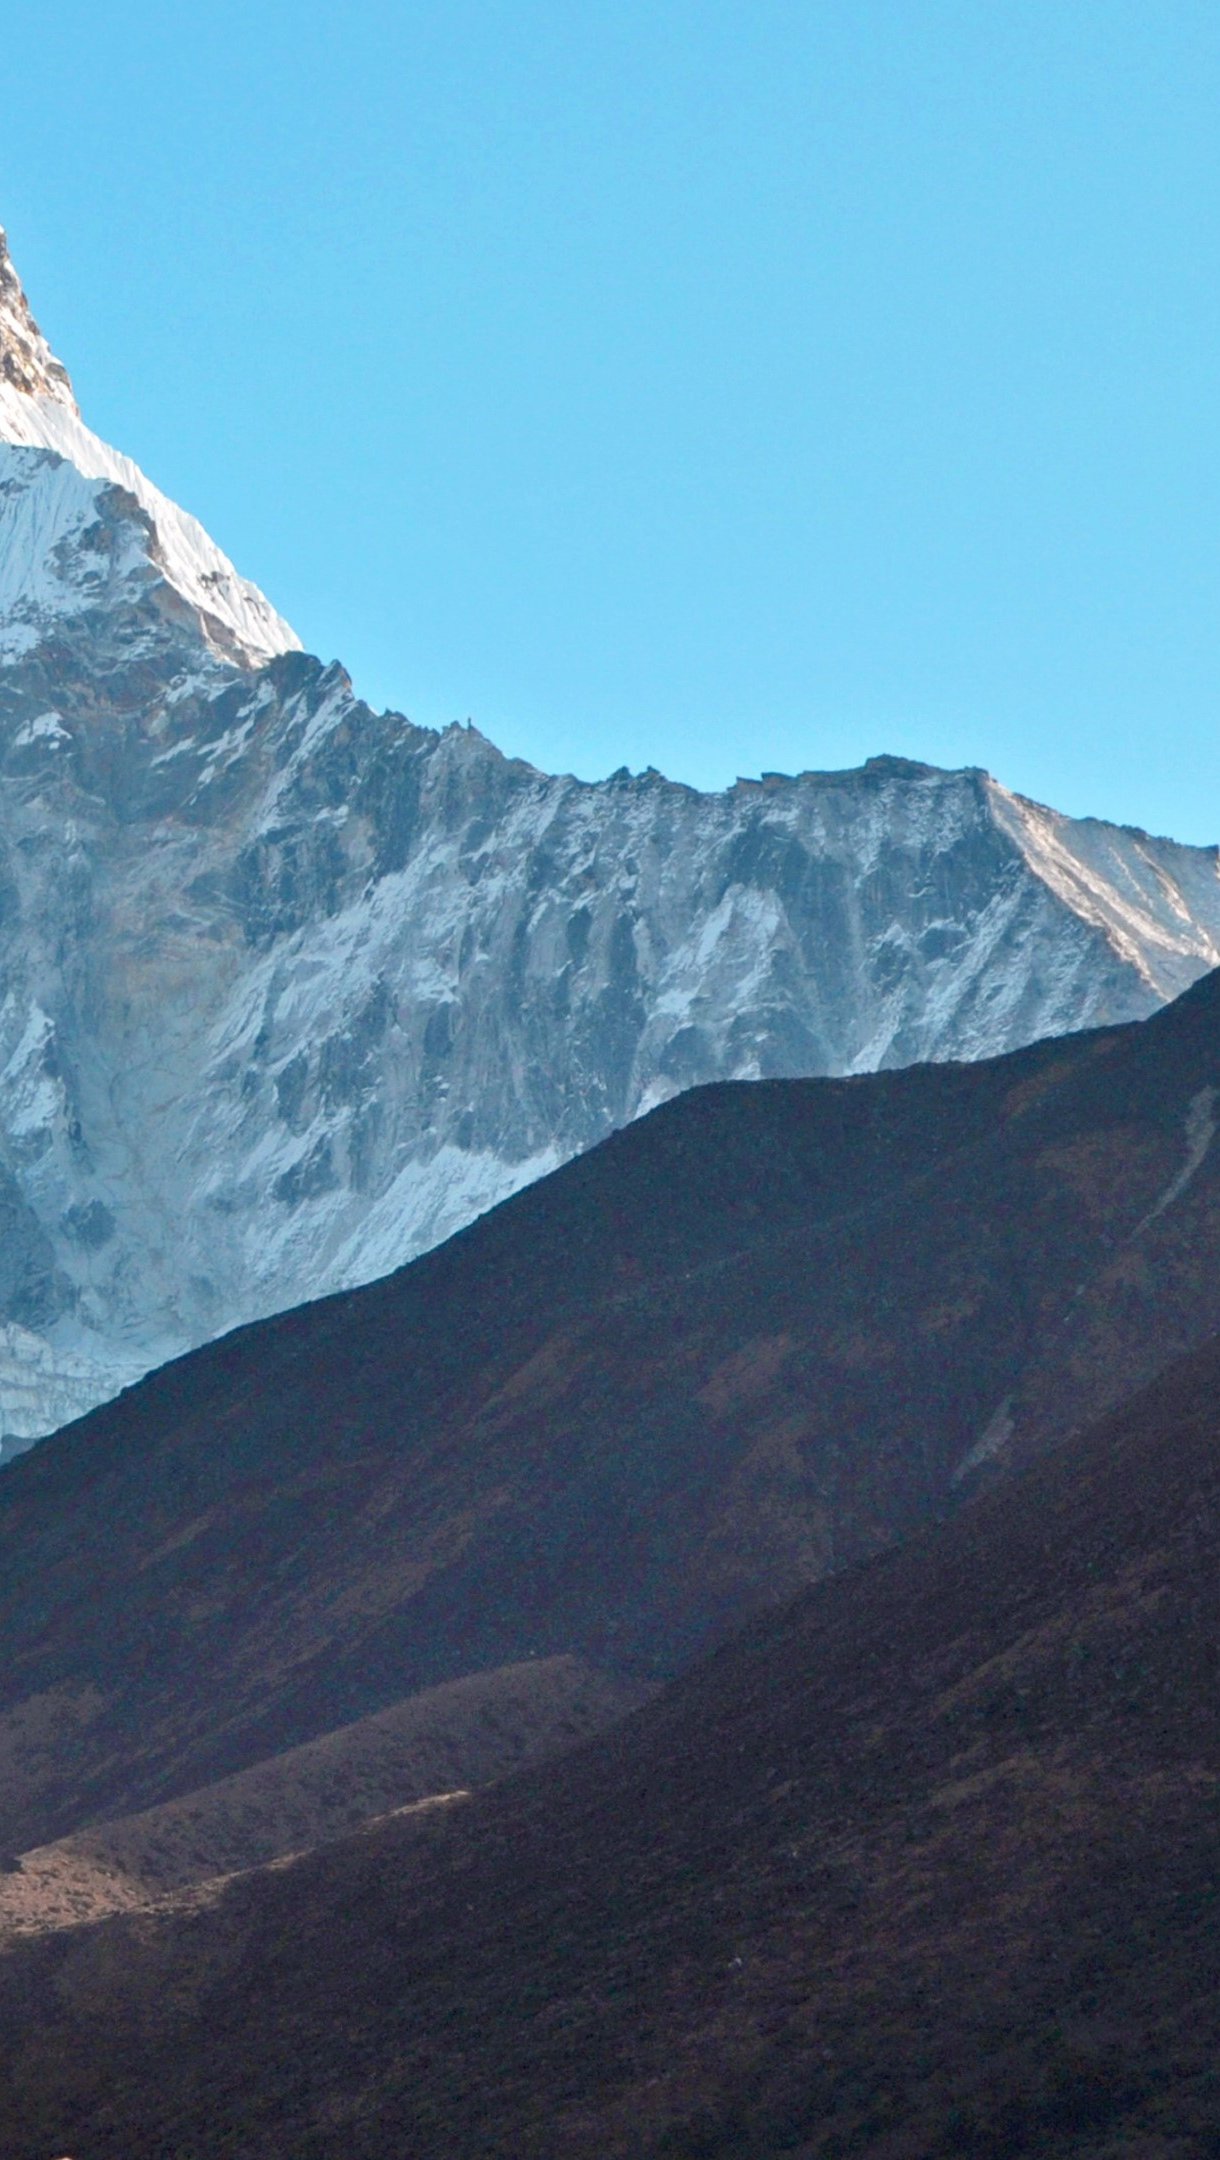 Fondos de pantalla Templo Ama Dablam en el Himalayas Vertical